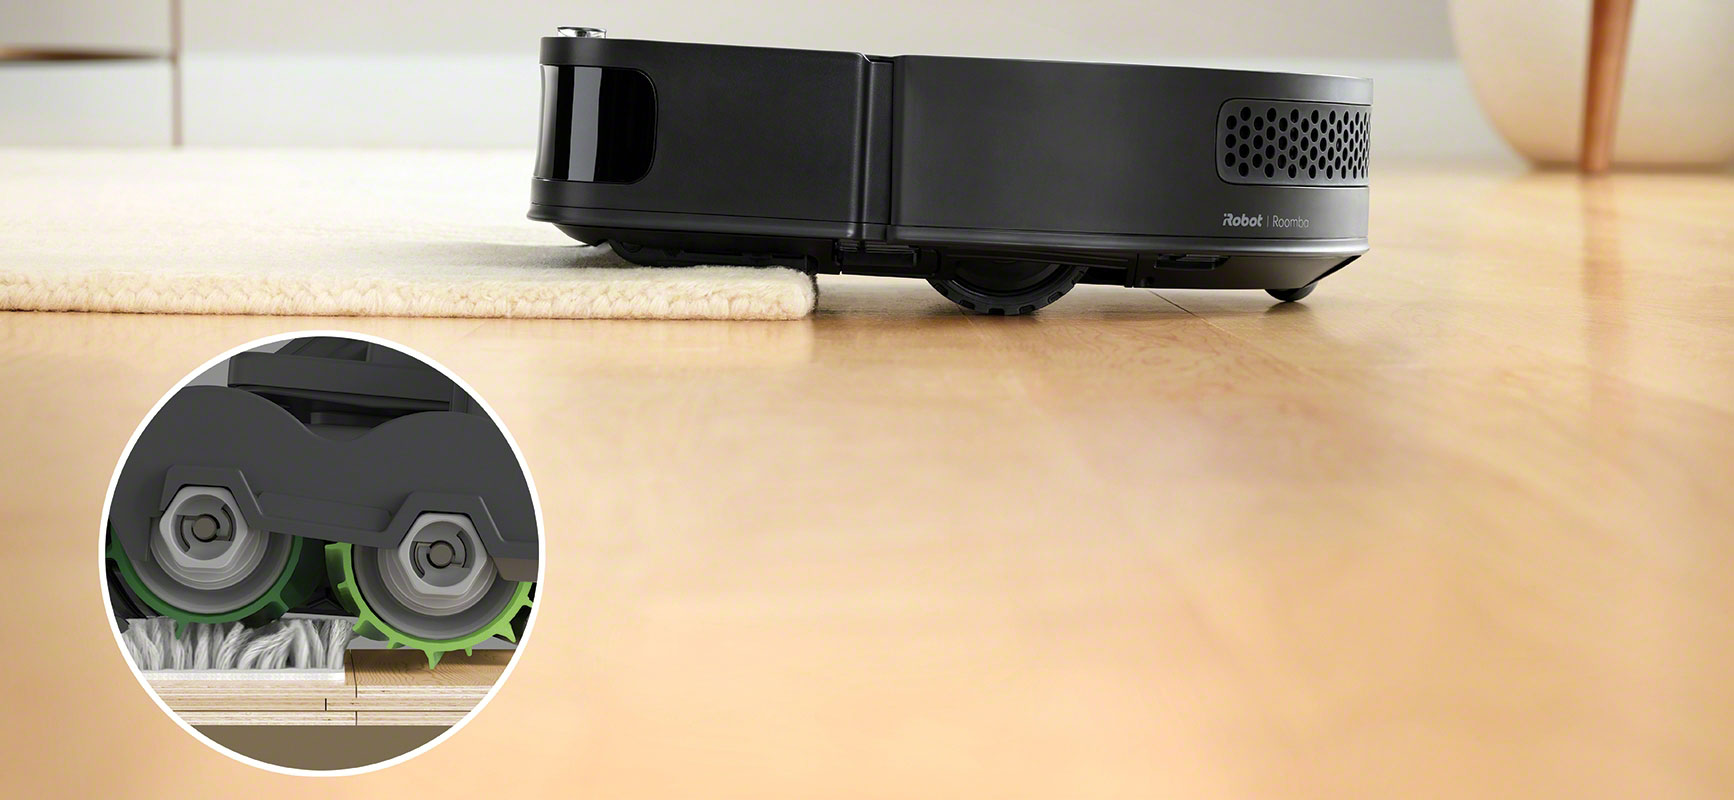 iRobot Roomba s9+ wjeżdza z podłogi na dywan